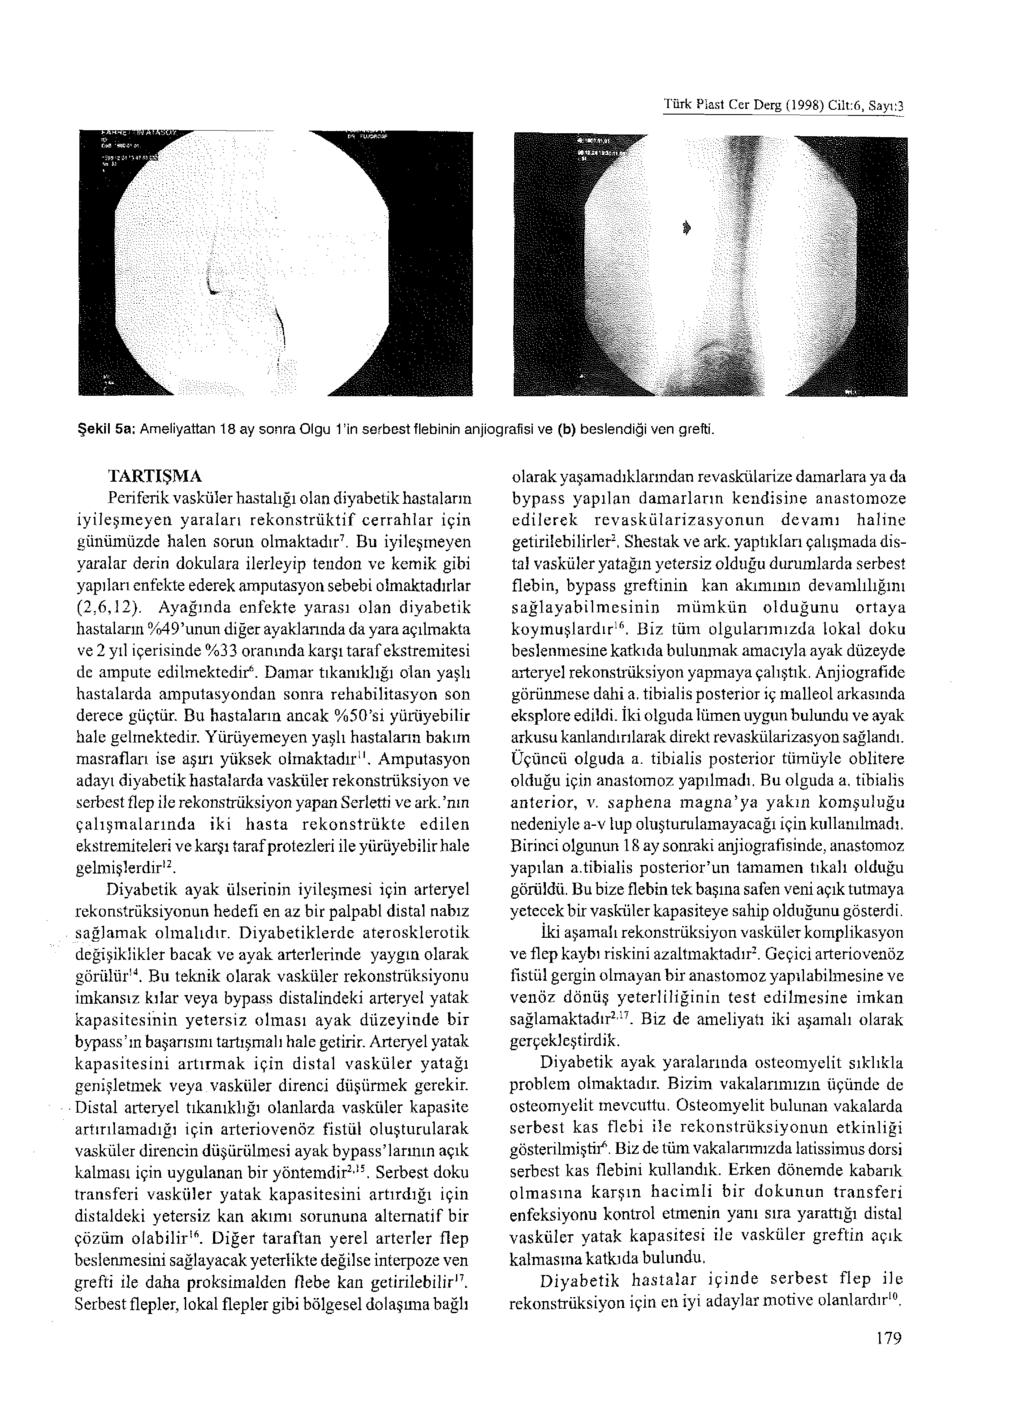 Türk Plast Cer Derg (1998) Cilt:6, Sayı:3 Şekil 5a: Ameliyattan 18 ay sonra Olgu 1 in serbest flebinin anjiografisi ve (b) beslendiği ven grefti.